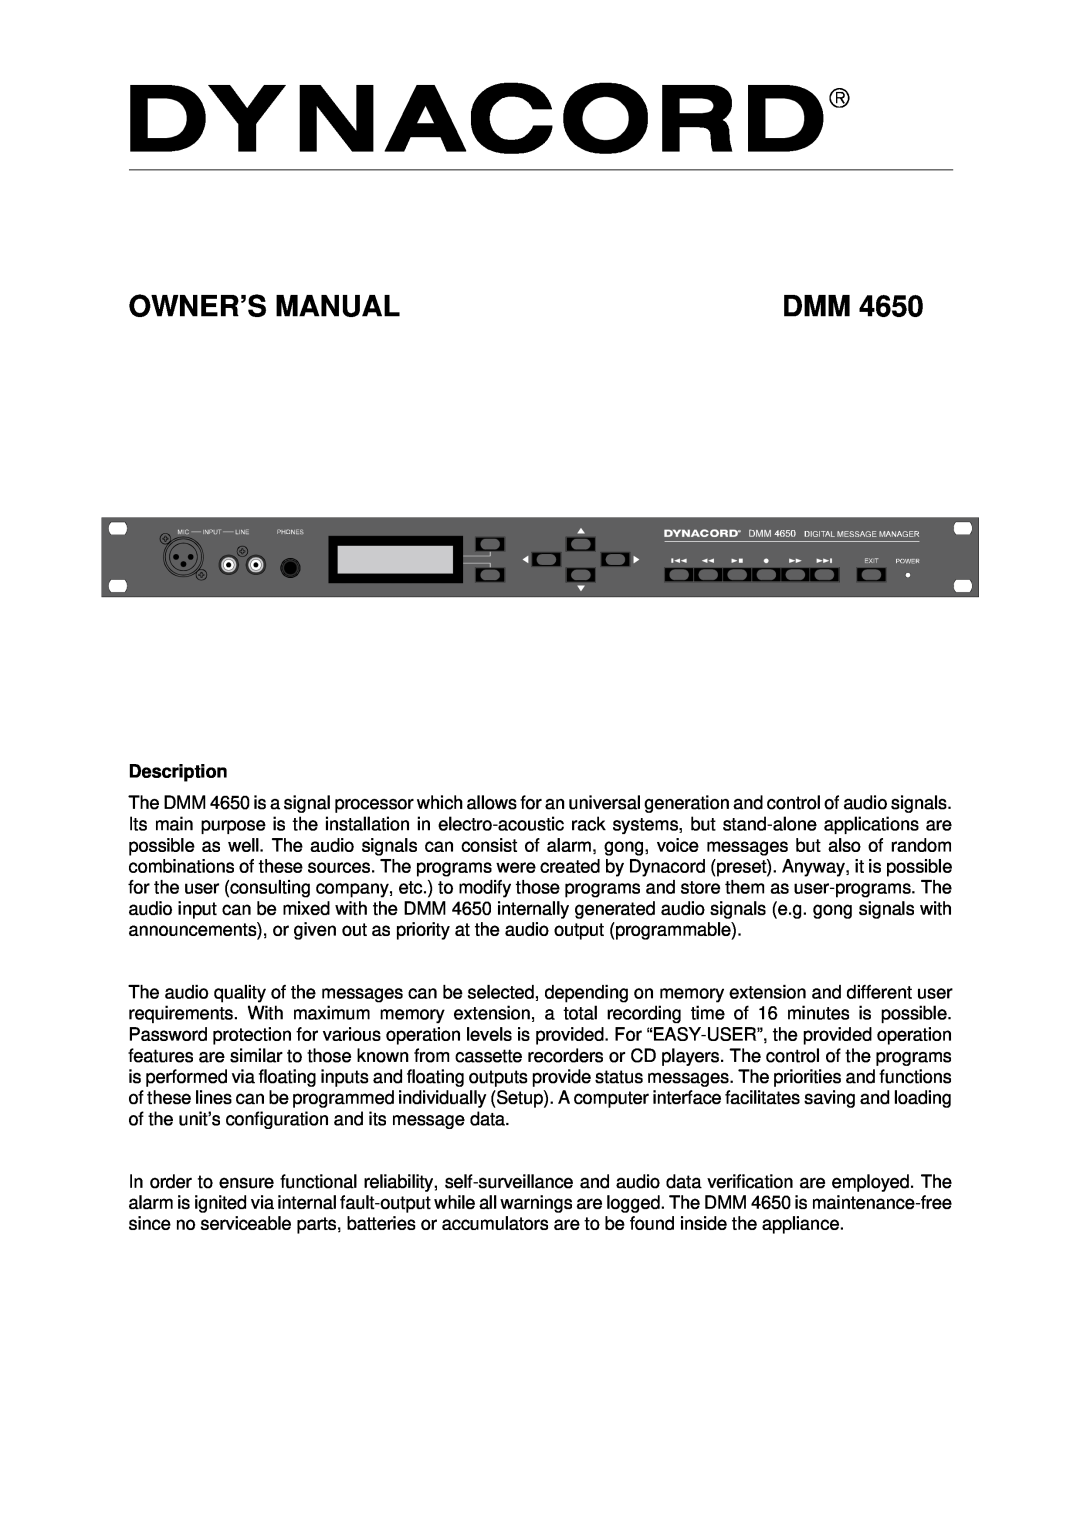 Dynacord DMM 4650 owner manual Owner’S Manual, Description 